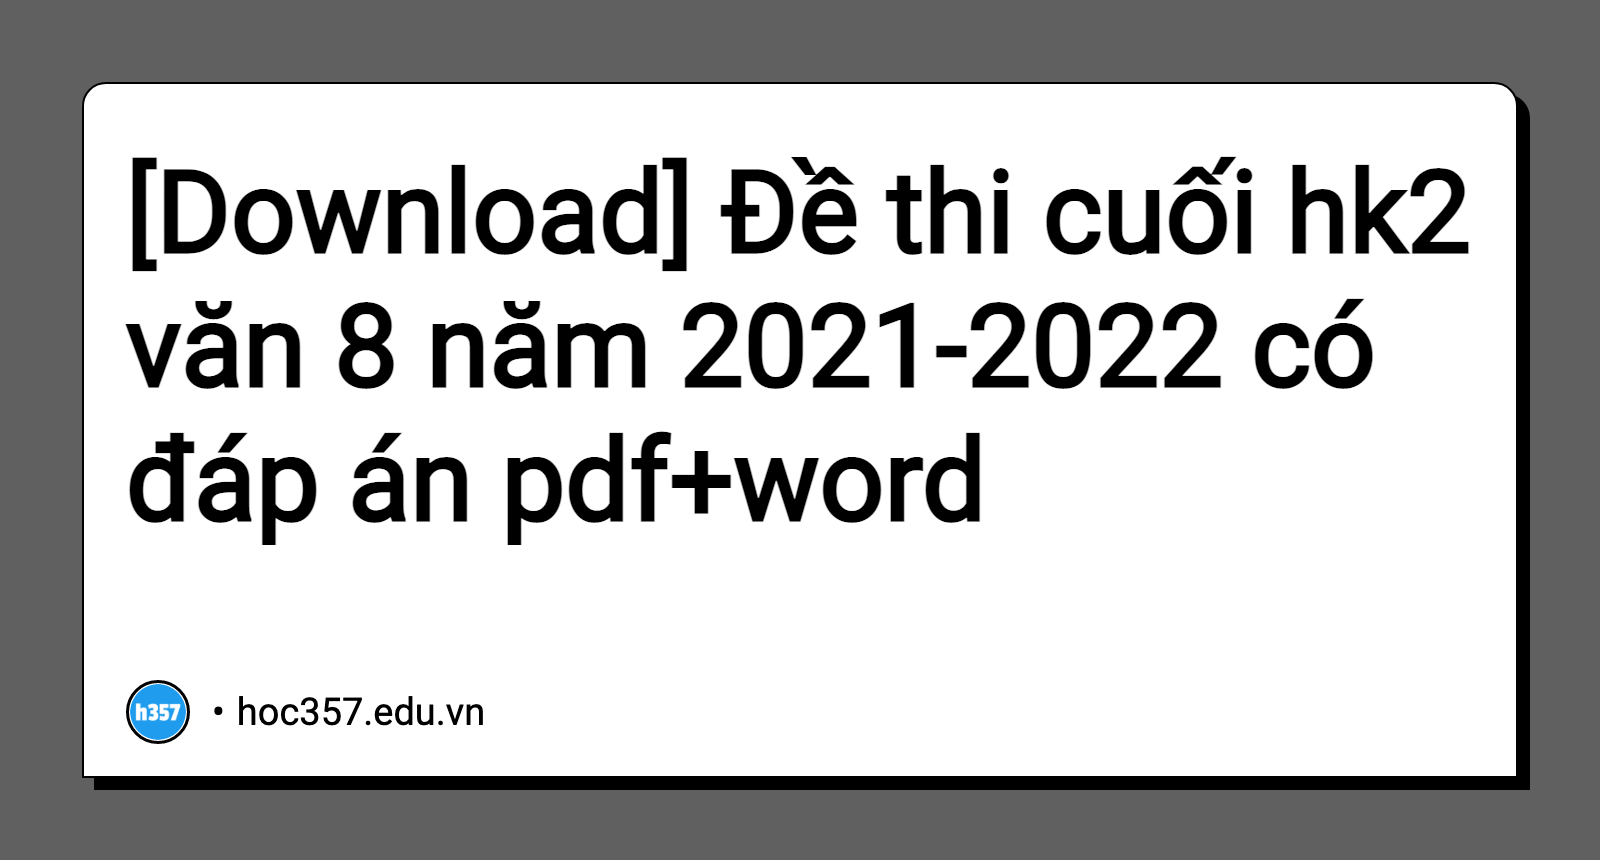 Hình minh họa Đề thi cuối hk2 văn 8 năm 2021-2022 có đáp án